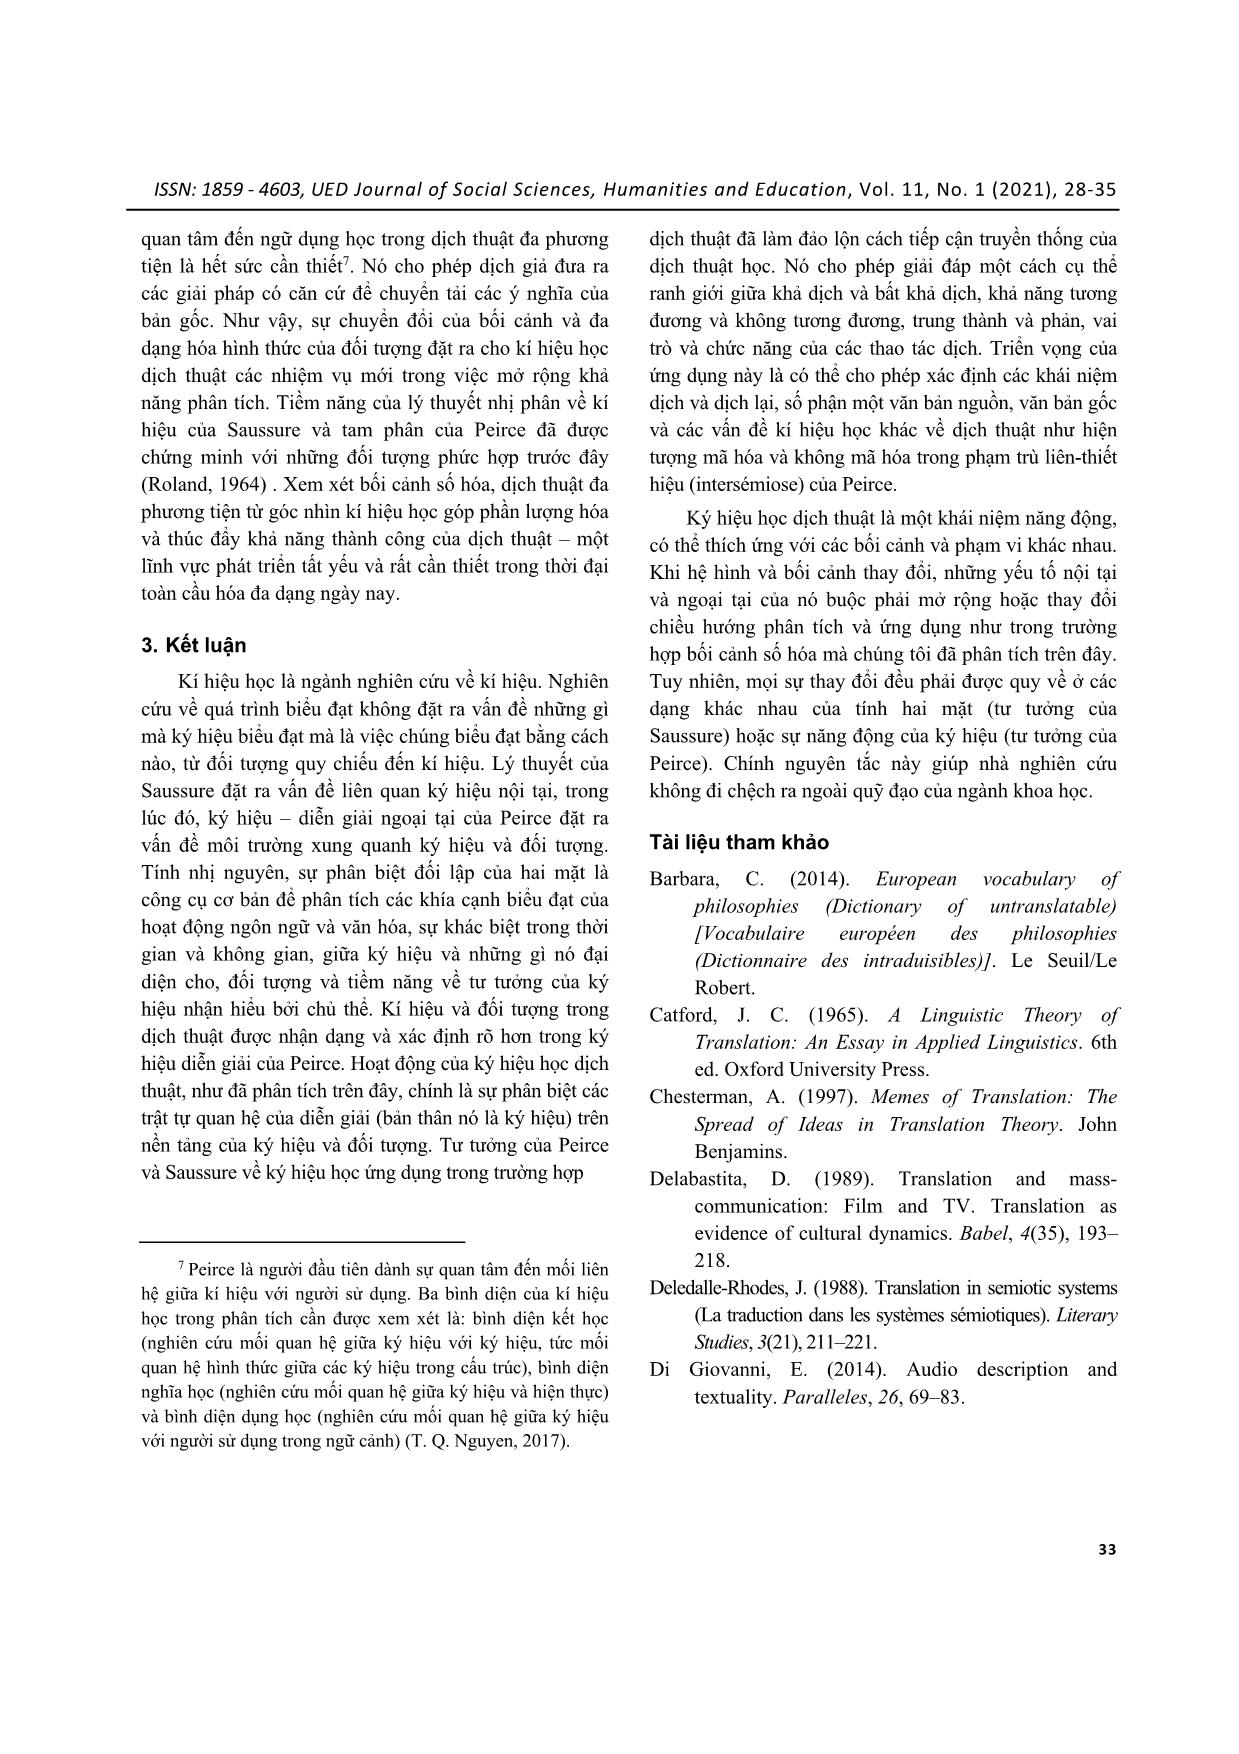 Kí hiệu học dịch thuật: kí hiệu và hệ hình trong bối cảnh số hoá trang 6